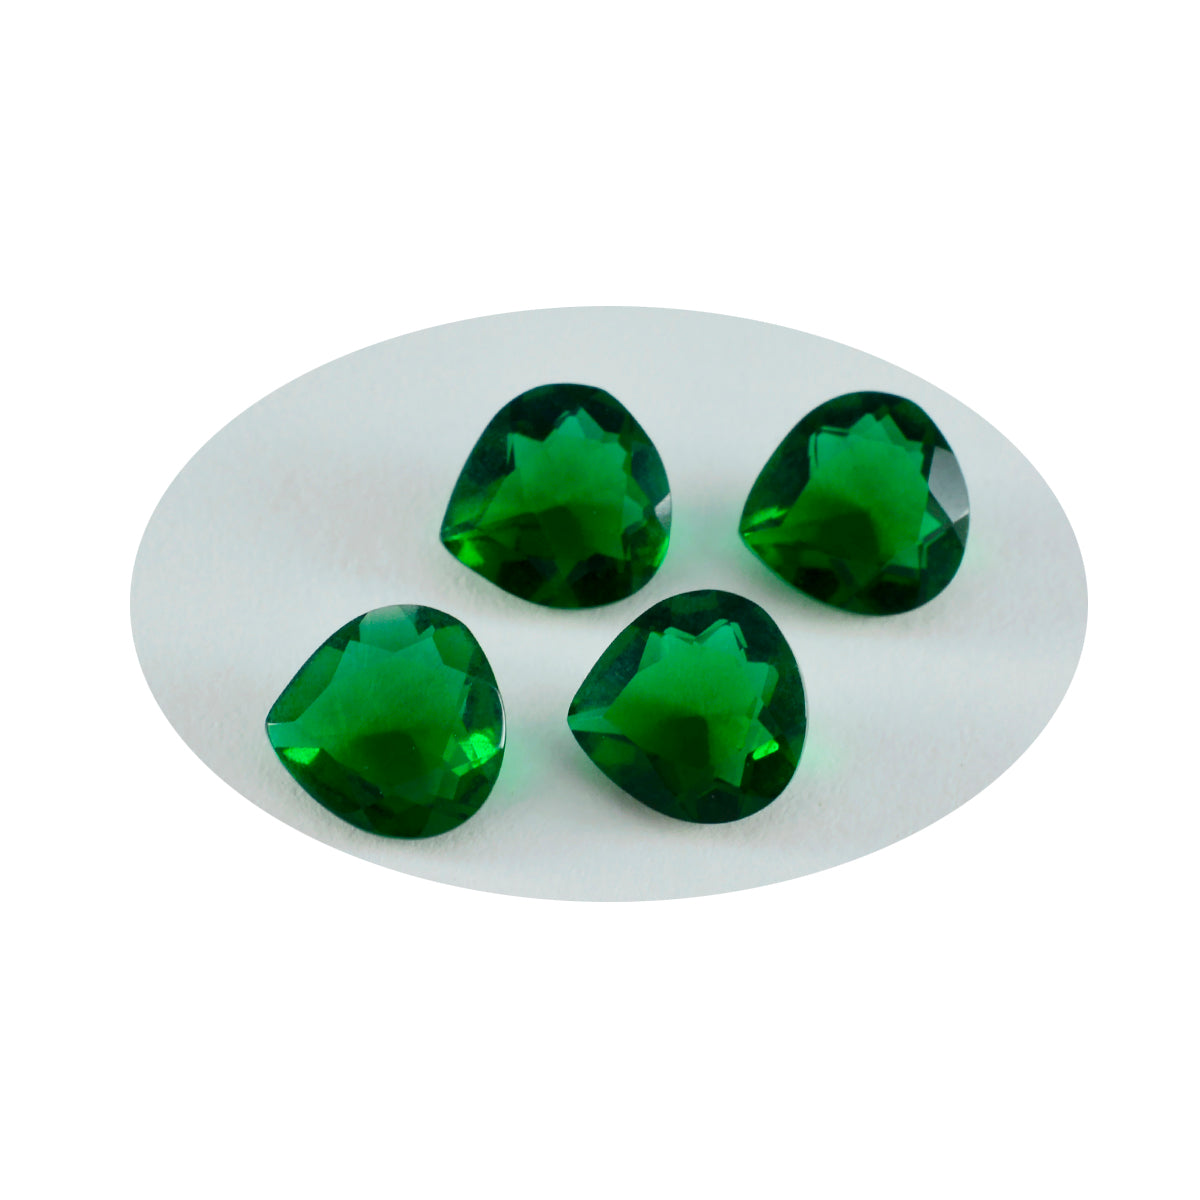 riyogems 1шт зеленый изумруд граненый 6x6 мм в форме сердца драгоценный камень удивительного качества